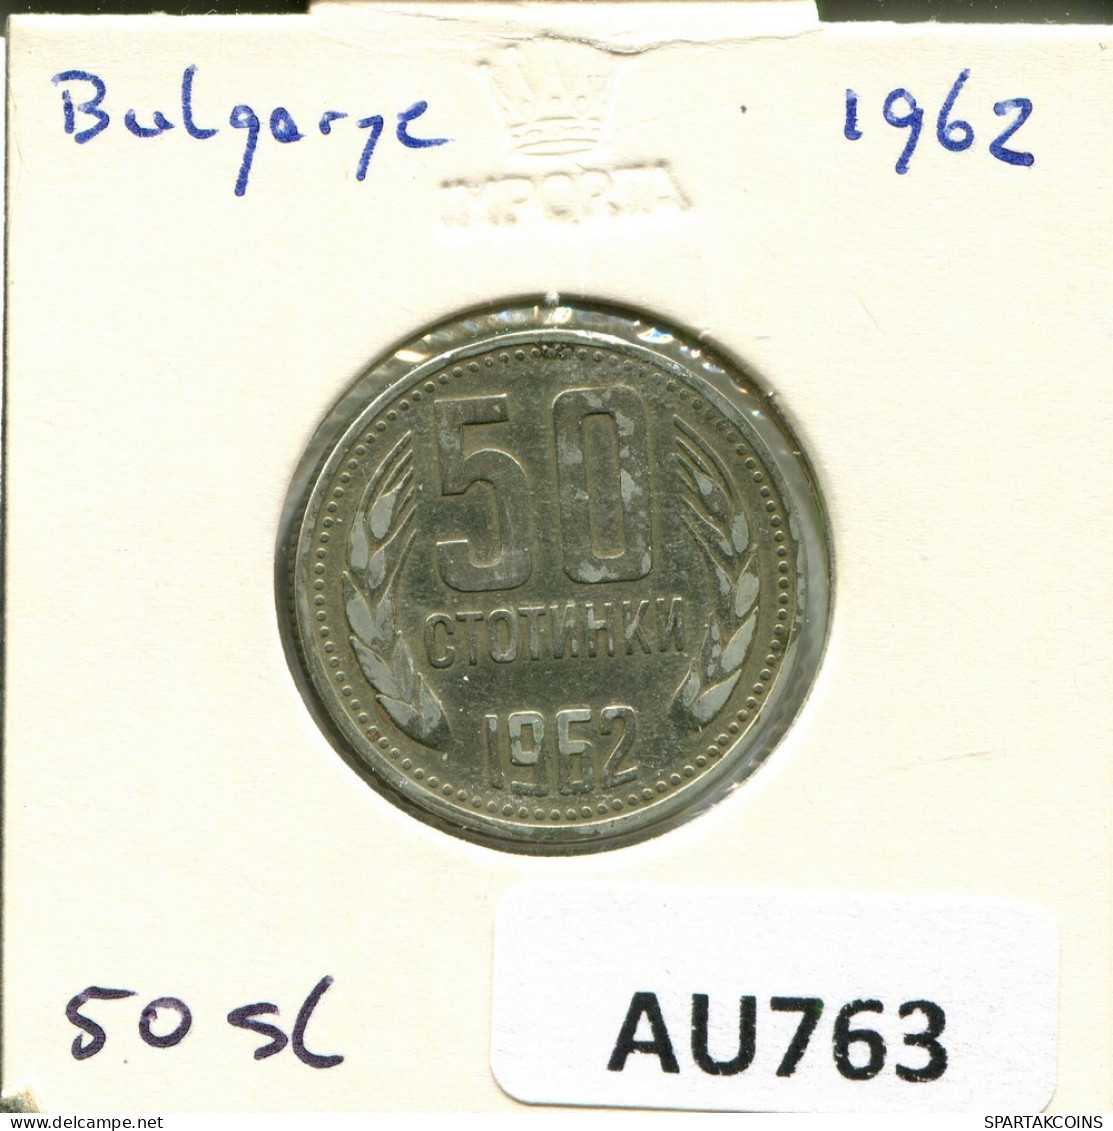 50 STOTINKI 1962 BULGARIA Coin #AU763.U.A - Bulgaria